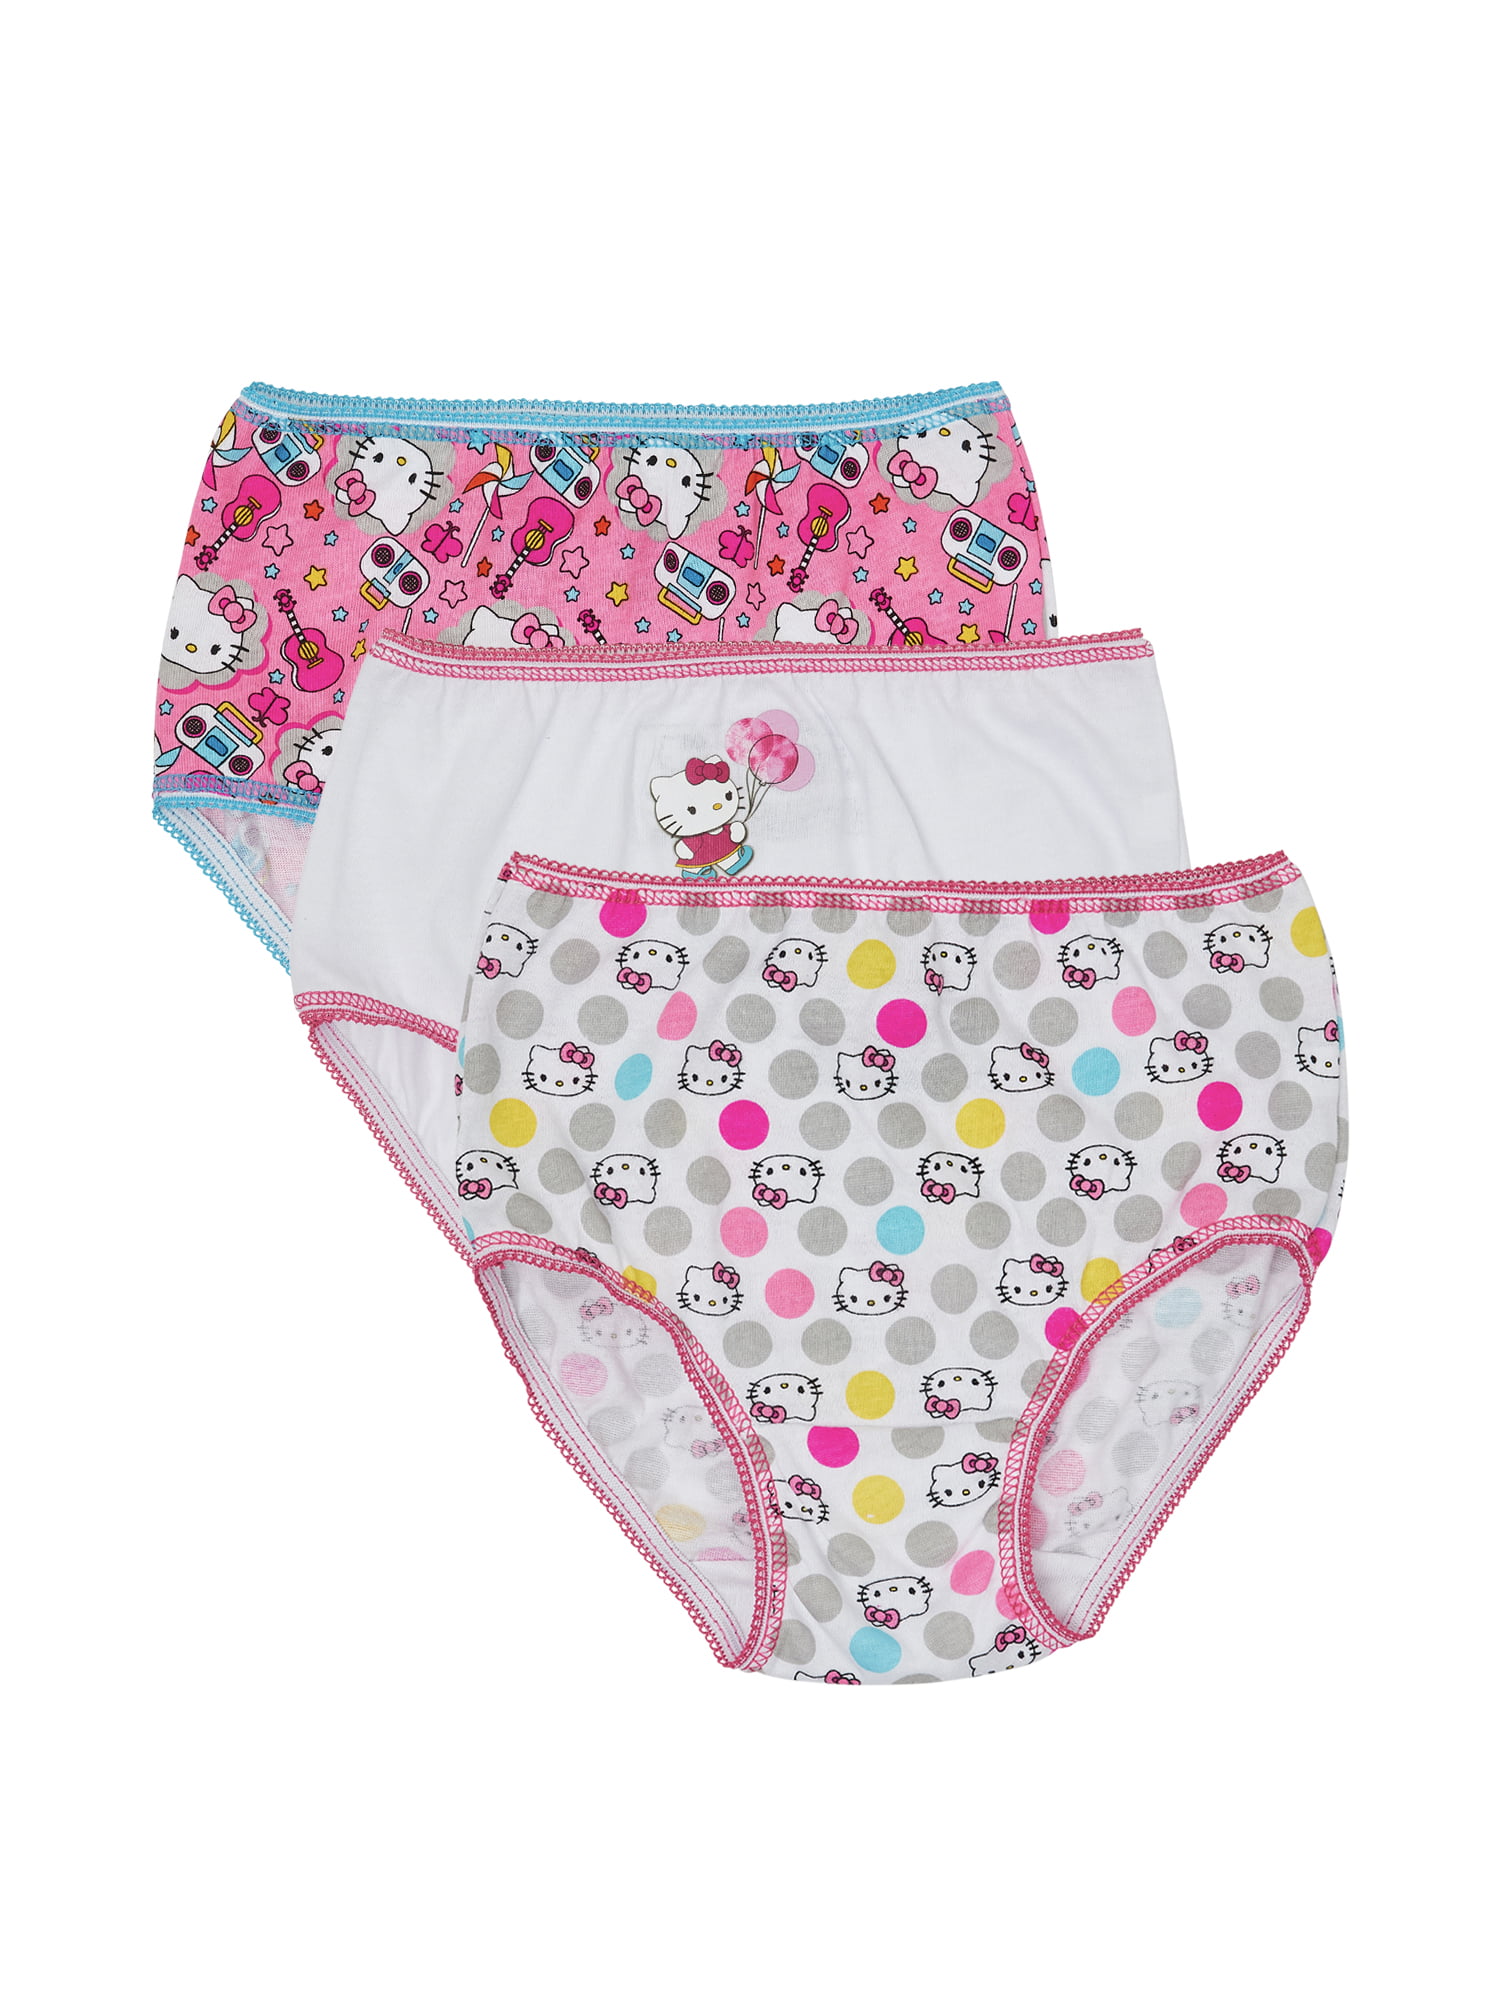  Hello  Kitty  Hello  Kitty  Underwear Panties  3 Pack 